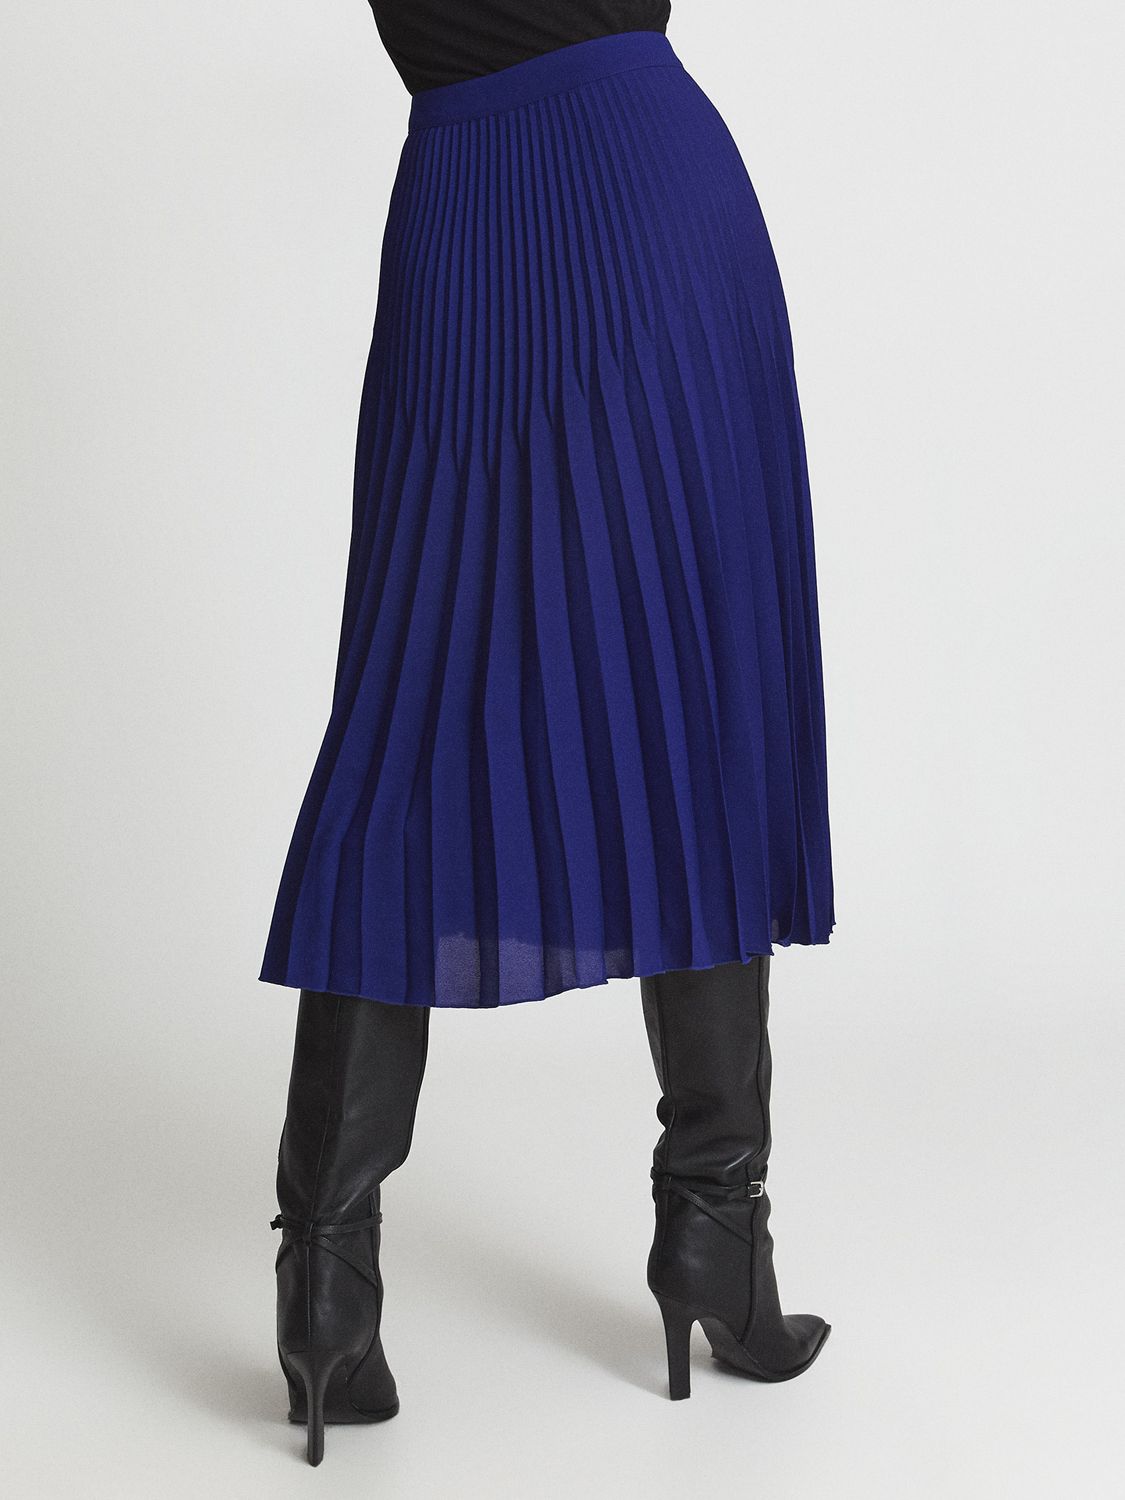 Reiss Isadora Pleated Midi Skirt, Cobalt Blue, 6